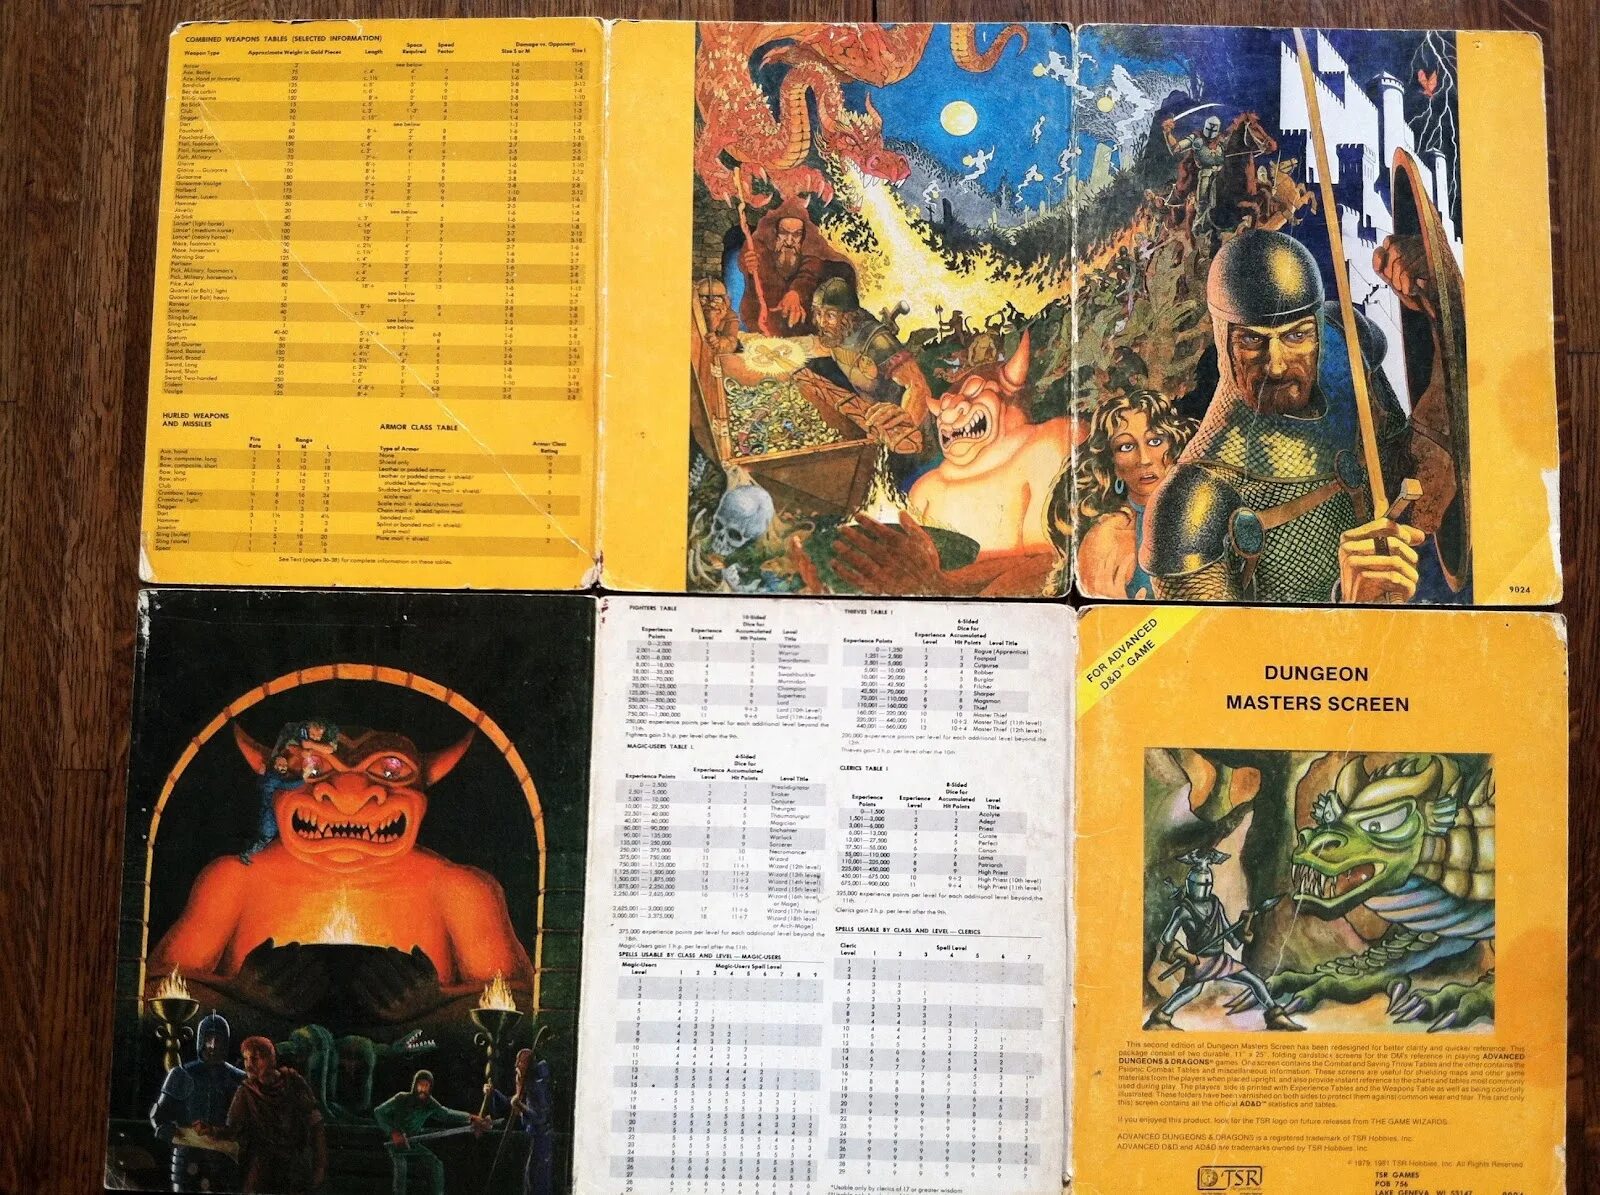 Данжеон мастер. Advanced Dungeons & Dragons 2. The Dungeon Master / мастер подземел. Advanced Dungeons & Dragons 1979.